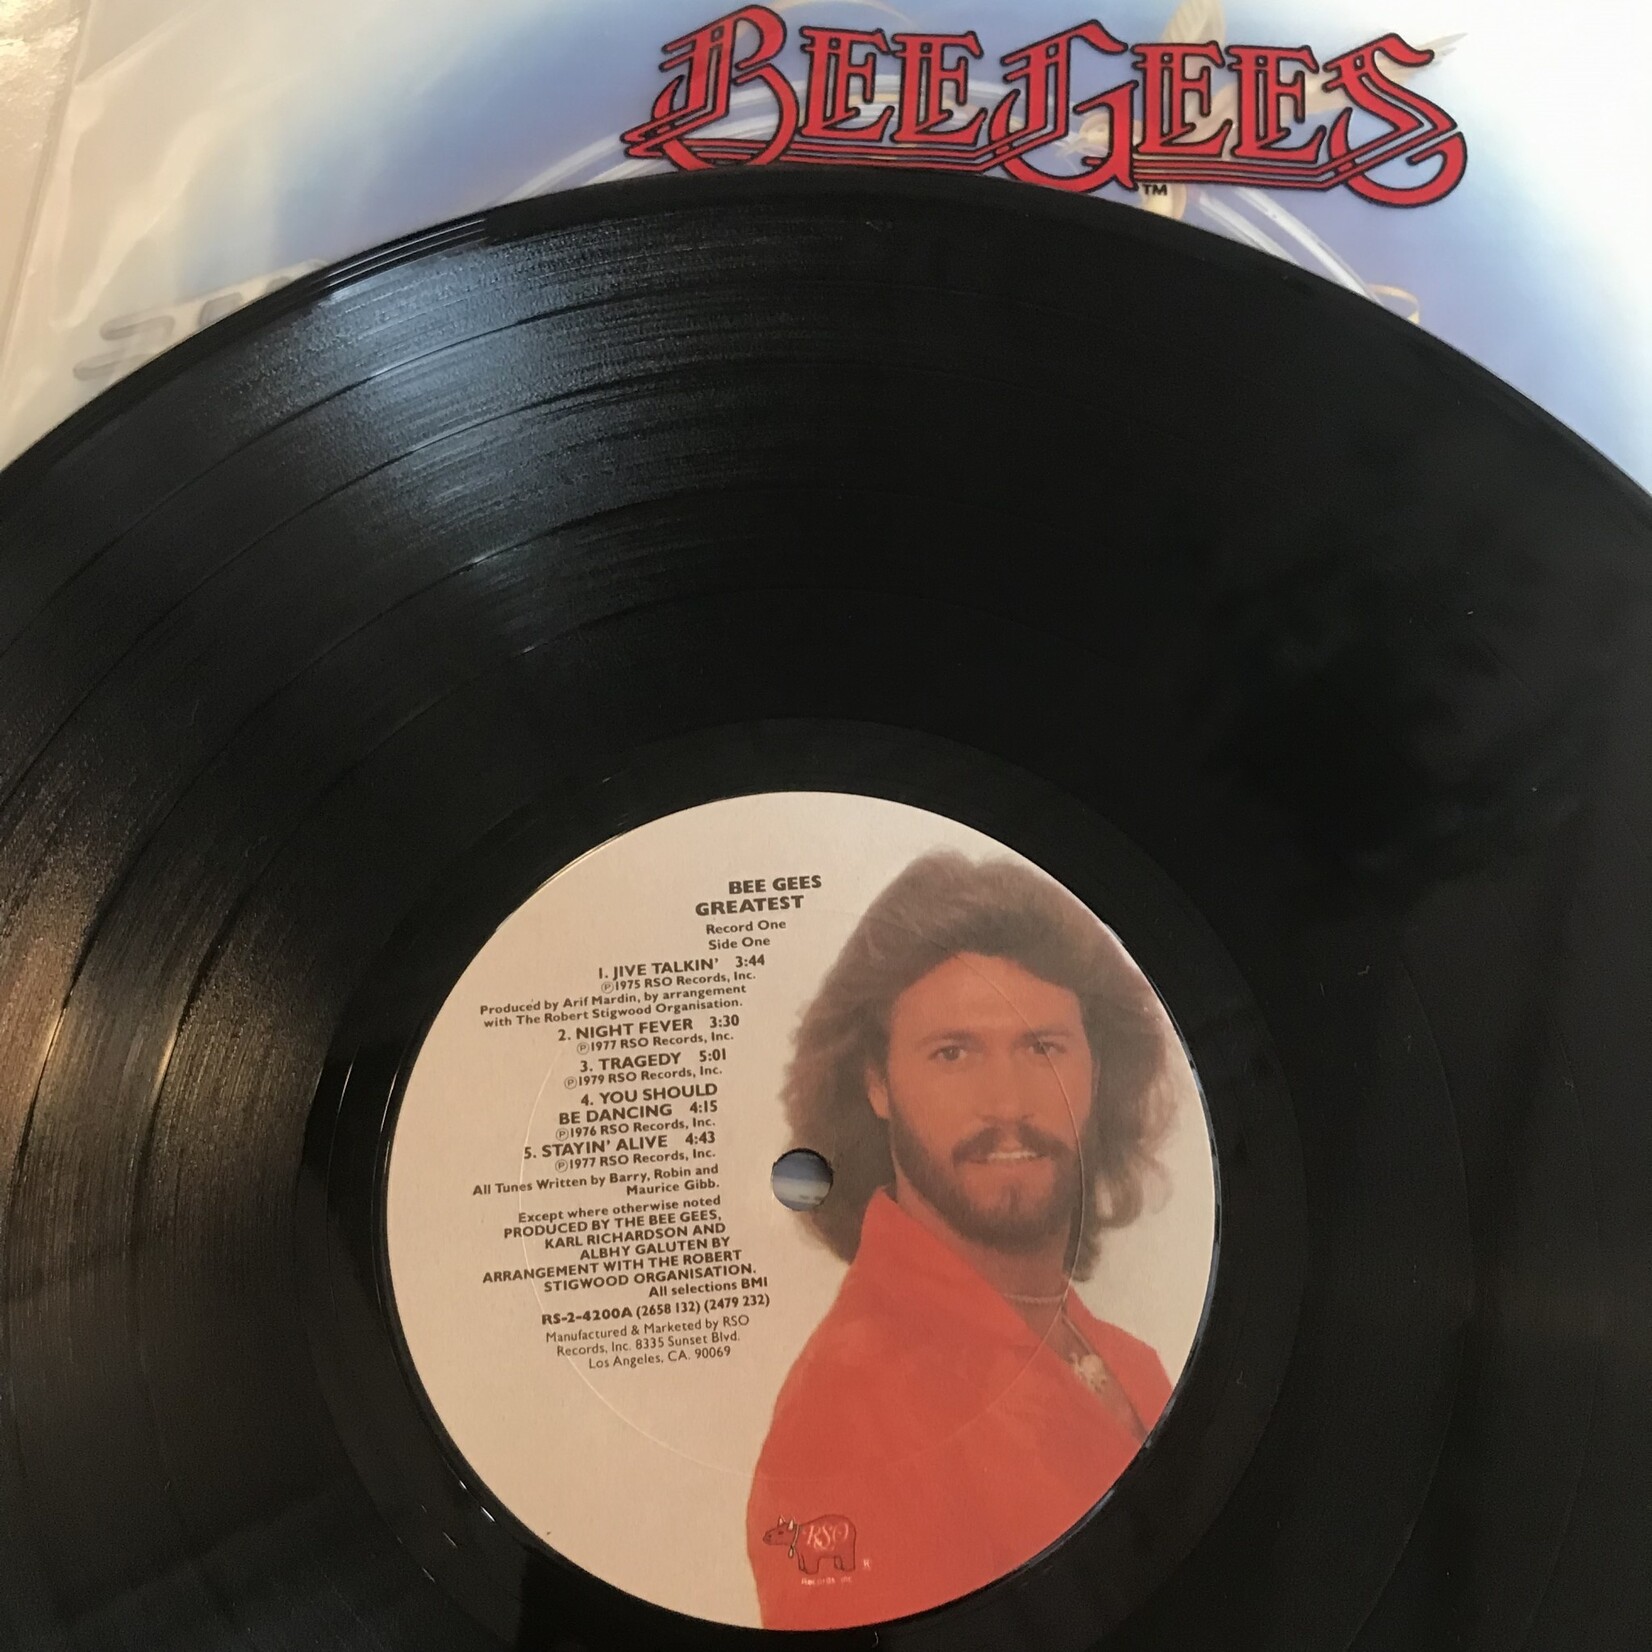 Bee Gees - Greatest - RS2 4200 - Vinyl LP (USED)